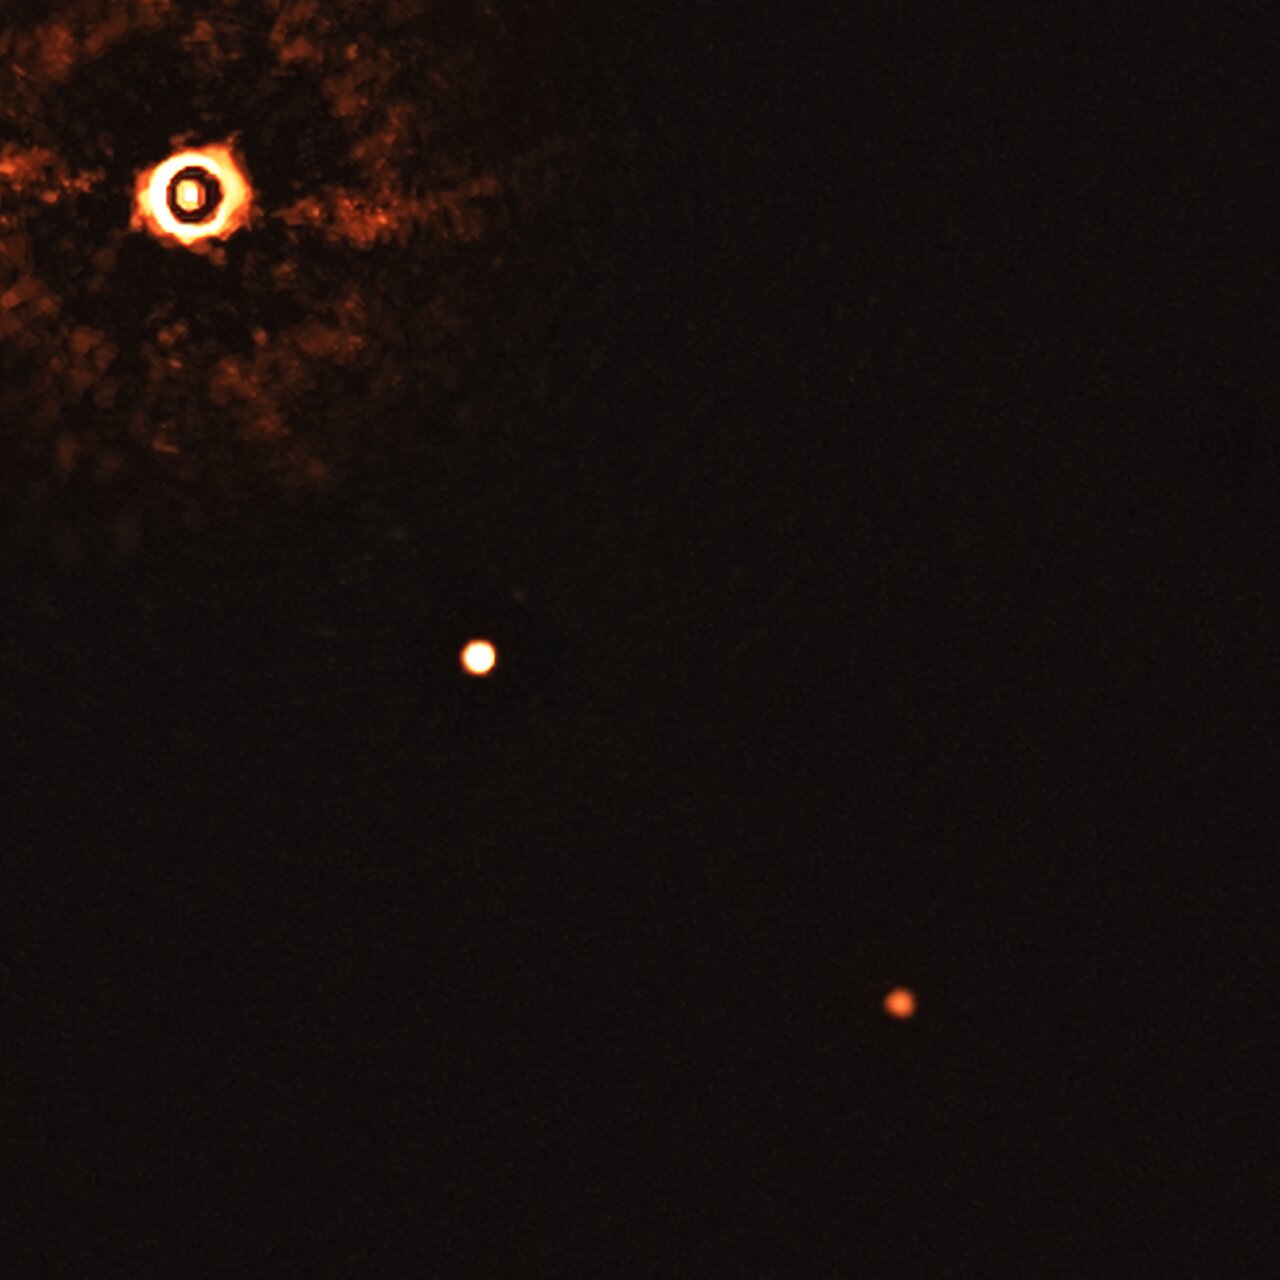 Itt az első kép a Naphoz hasonló csillagról és bolygóiról